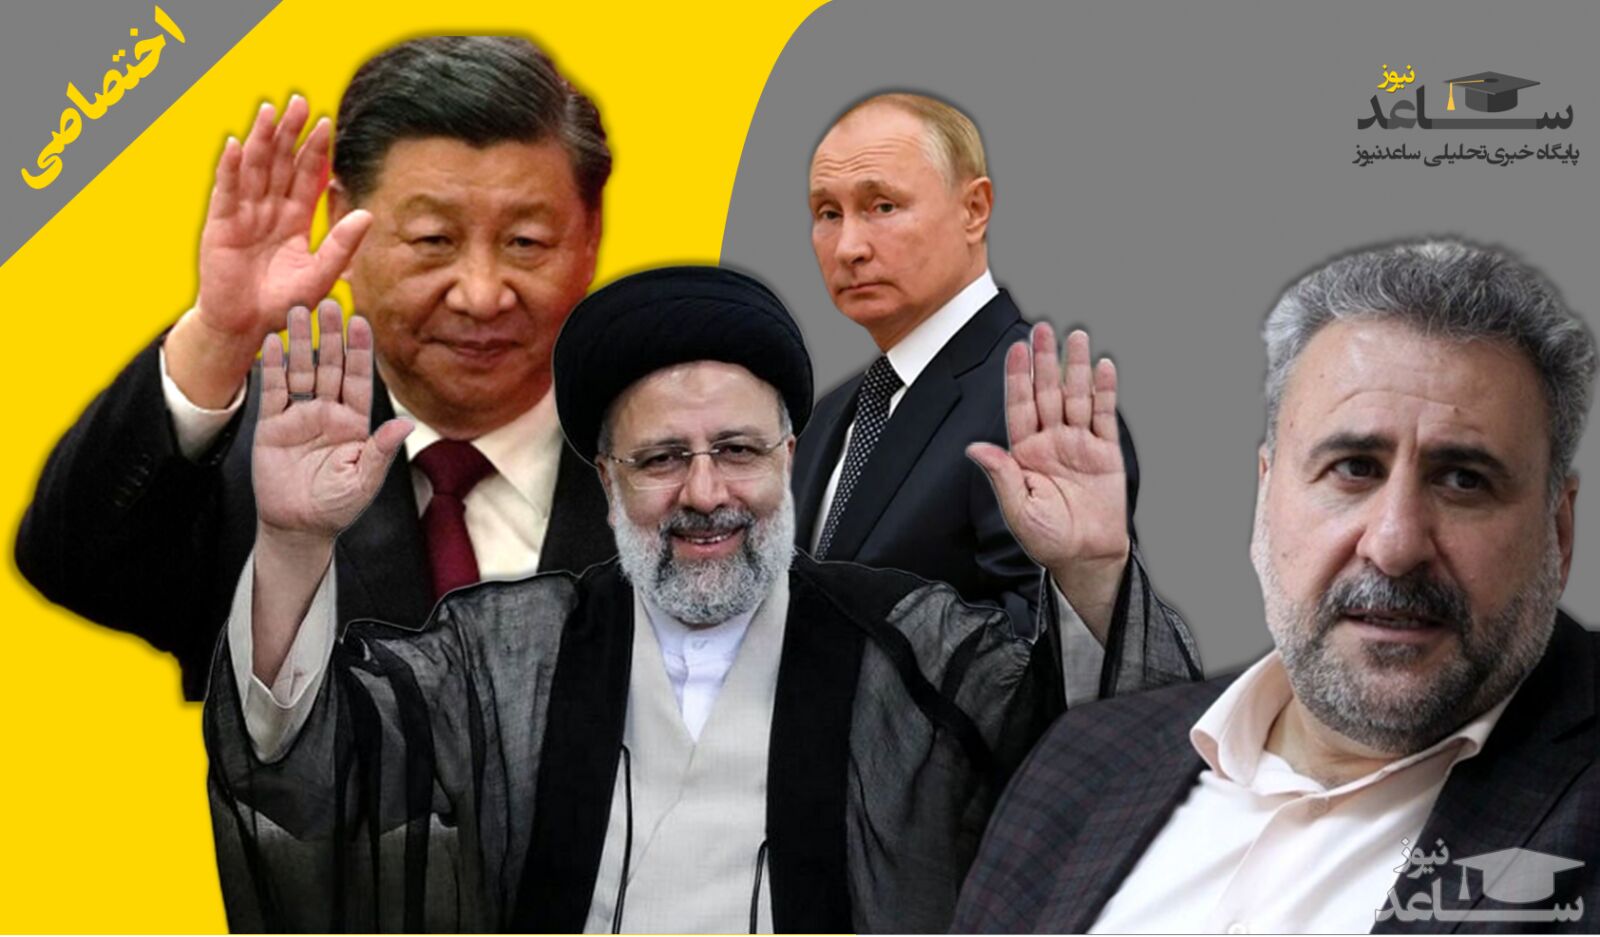 ادعای داشتن مناسبات راهبردی با چین و روسیه بیشتر یک توهم است تا یک واقعیت